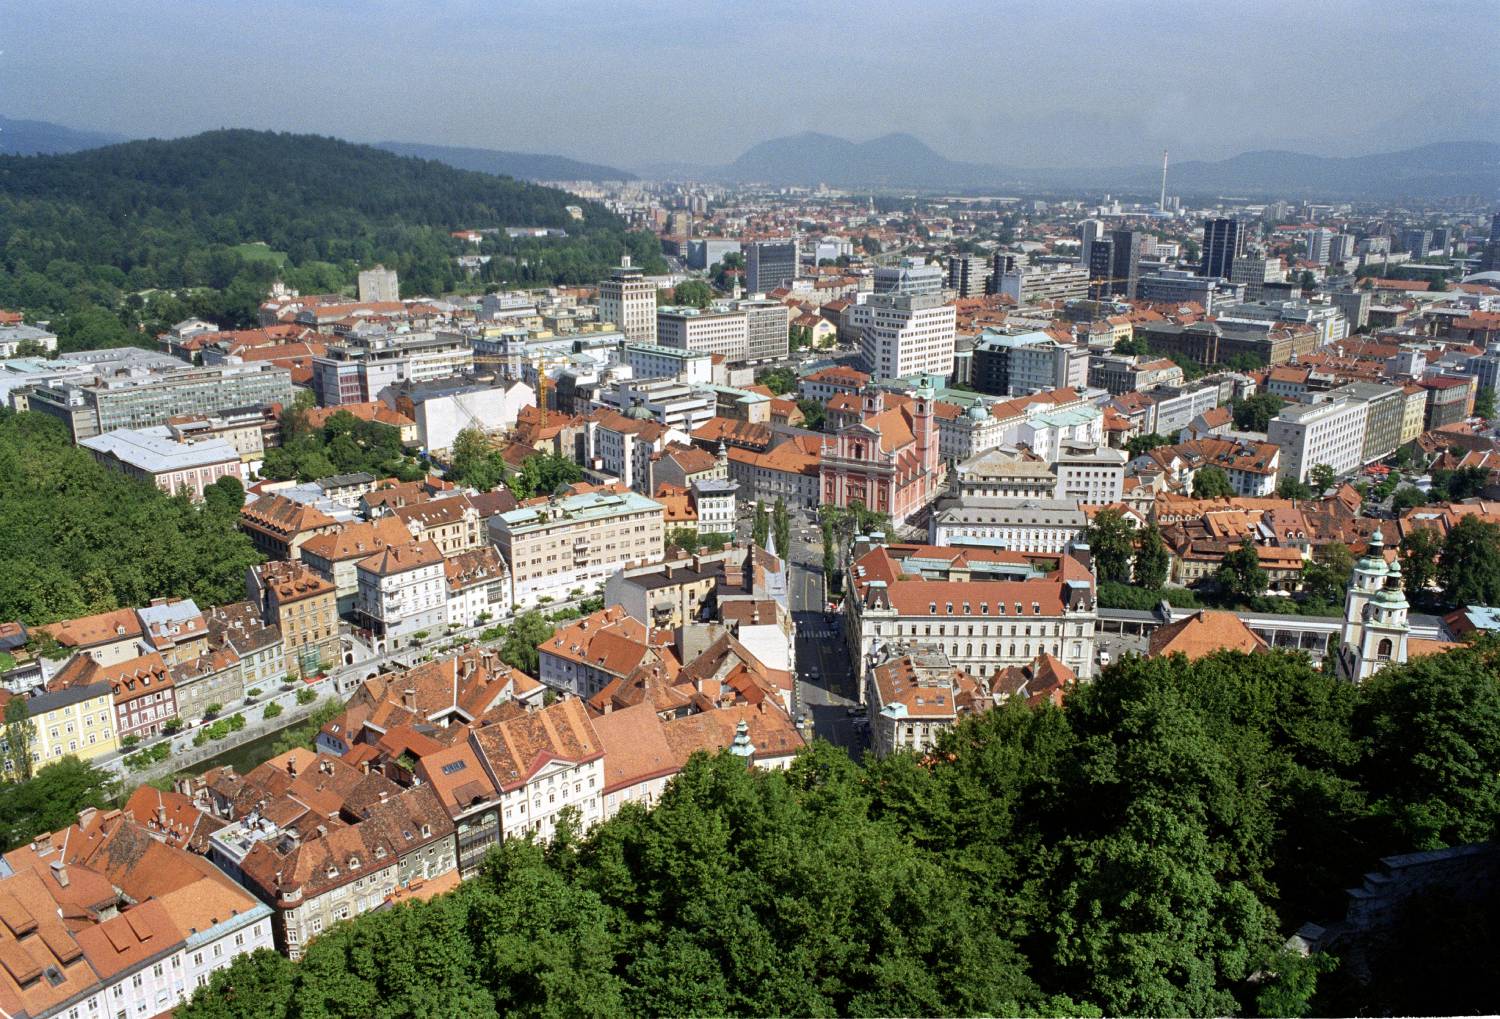 Lubiana (Slovenia) Capitale mondiale del libro 2010